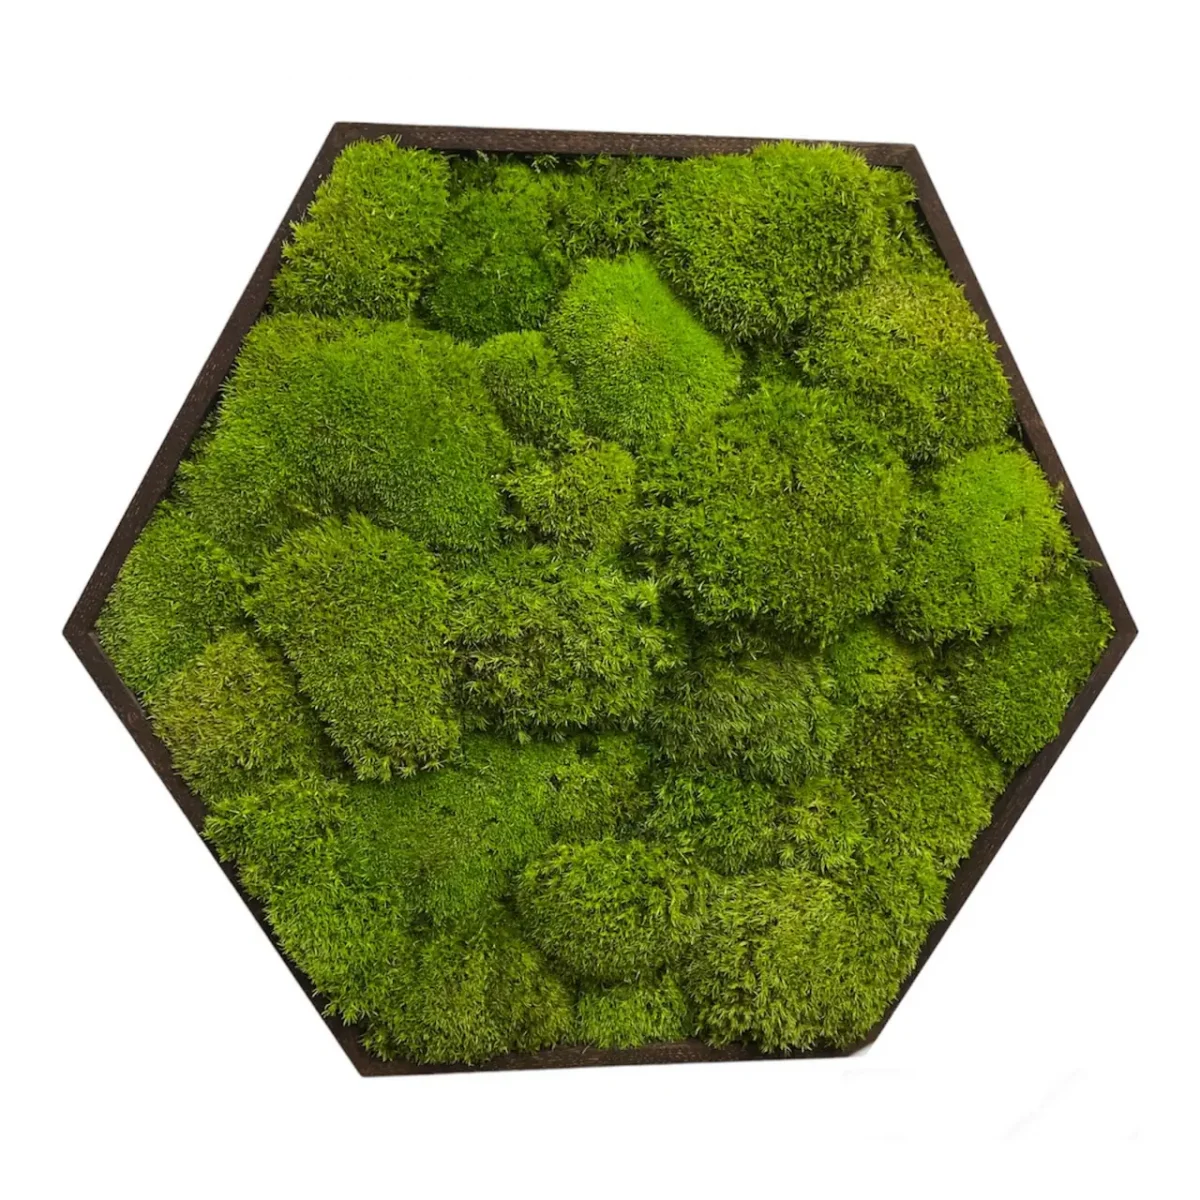 Moosbild Hexagon mit Kugelmoos